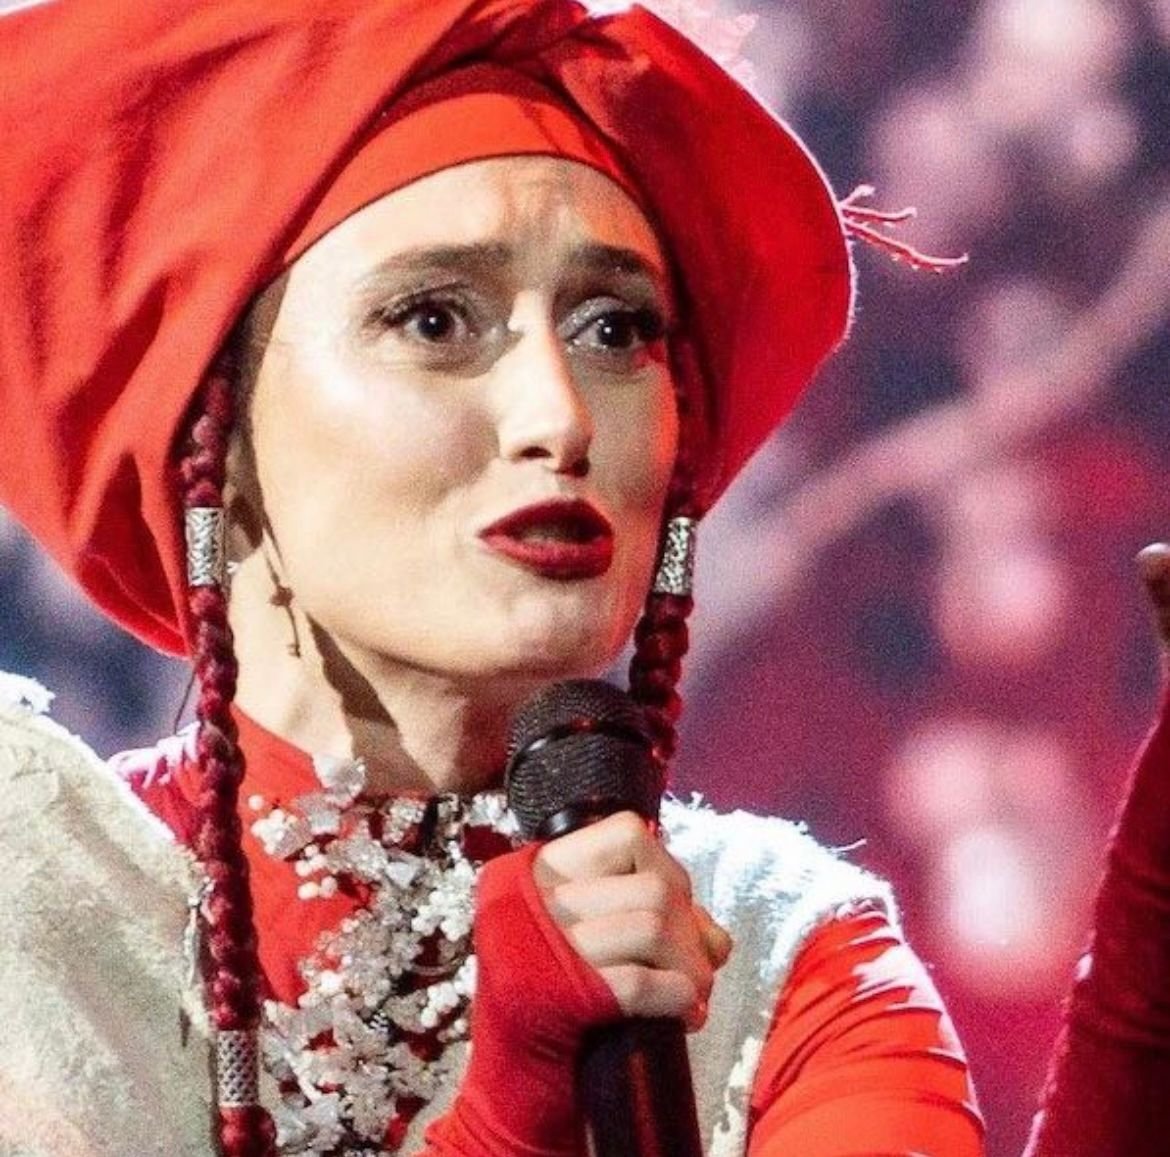 Eurovision Song Contest: La cantante ucraina Alina Pash si ritira dal festival, la causa è la Russia